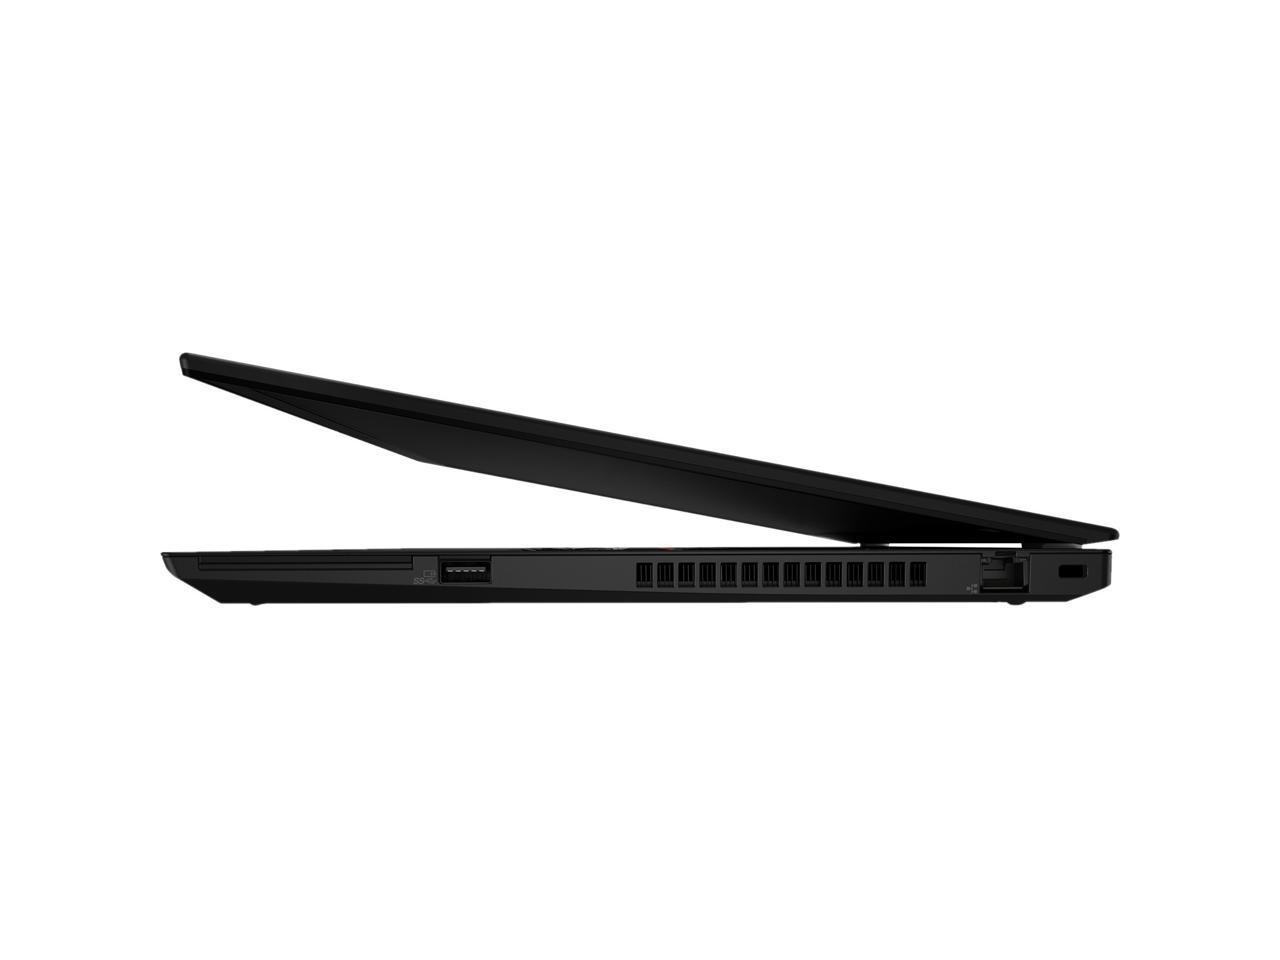 Lenovo ThinkPad T15 20S60018US 15.6" Laptop i7-10510U 8GB 512GB SSD Win 10 Pro